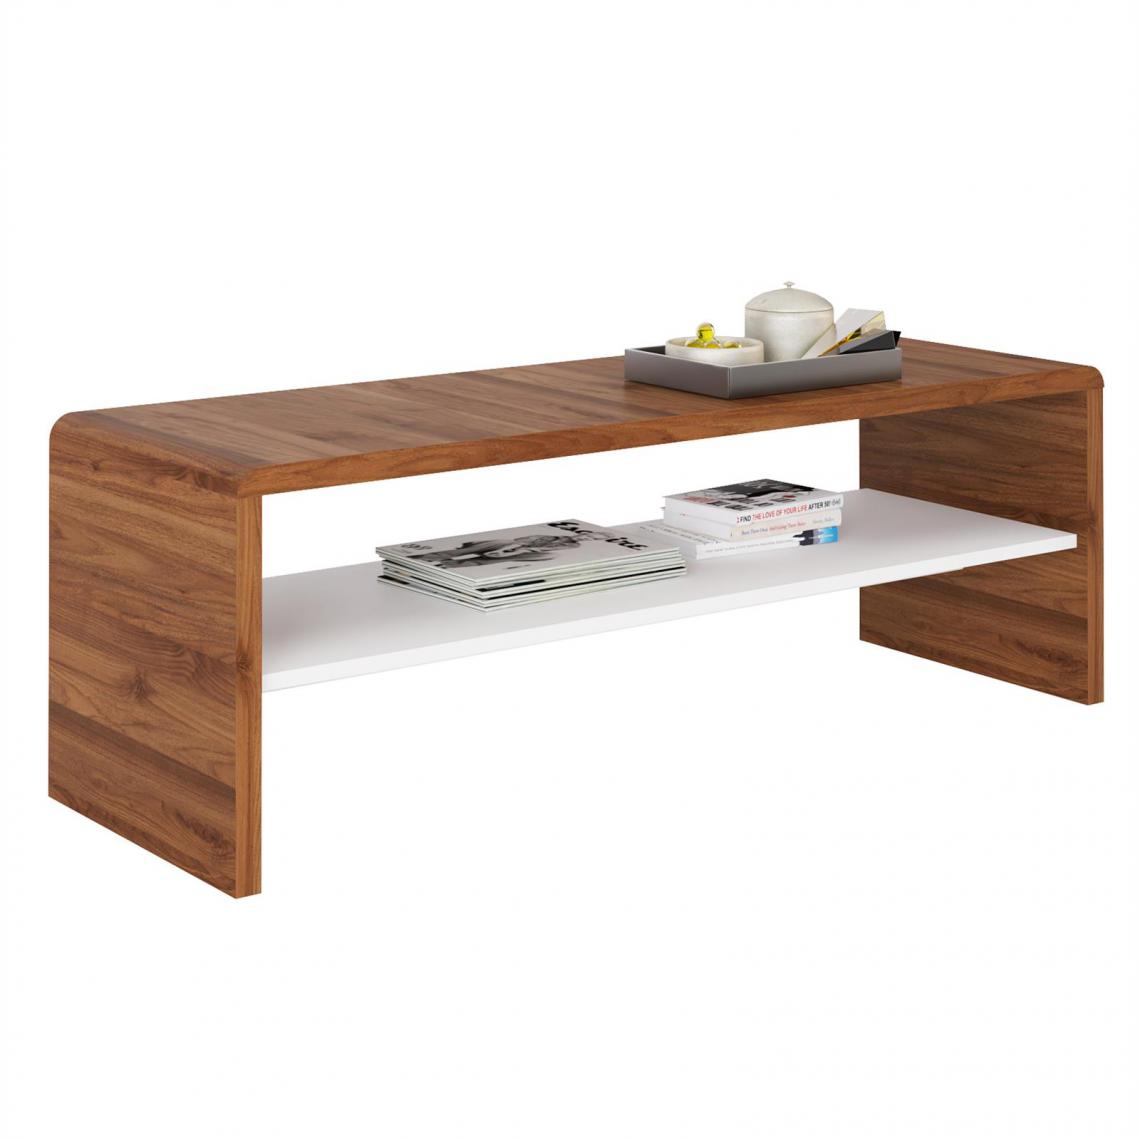 Idimex - Table basse / Meuble TV NOELLE, en mélaminé couleur noyer et blanc mat - Tables basses